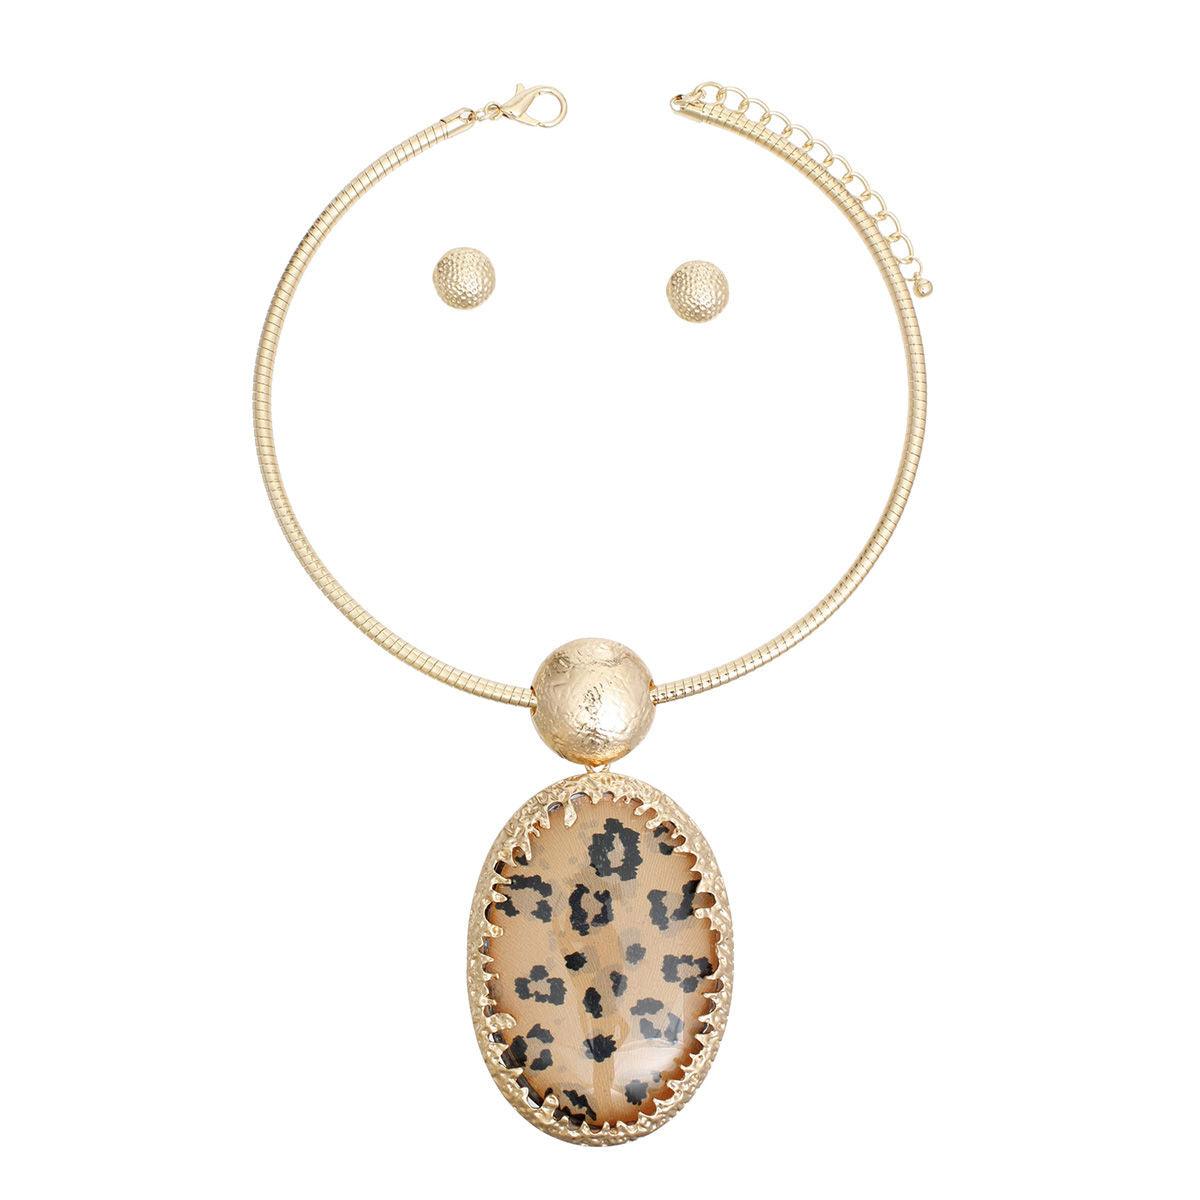 Leopard Print Pendant Gold Necklace Set: Bold & Stylish Statement Fashion Jewelry